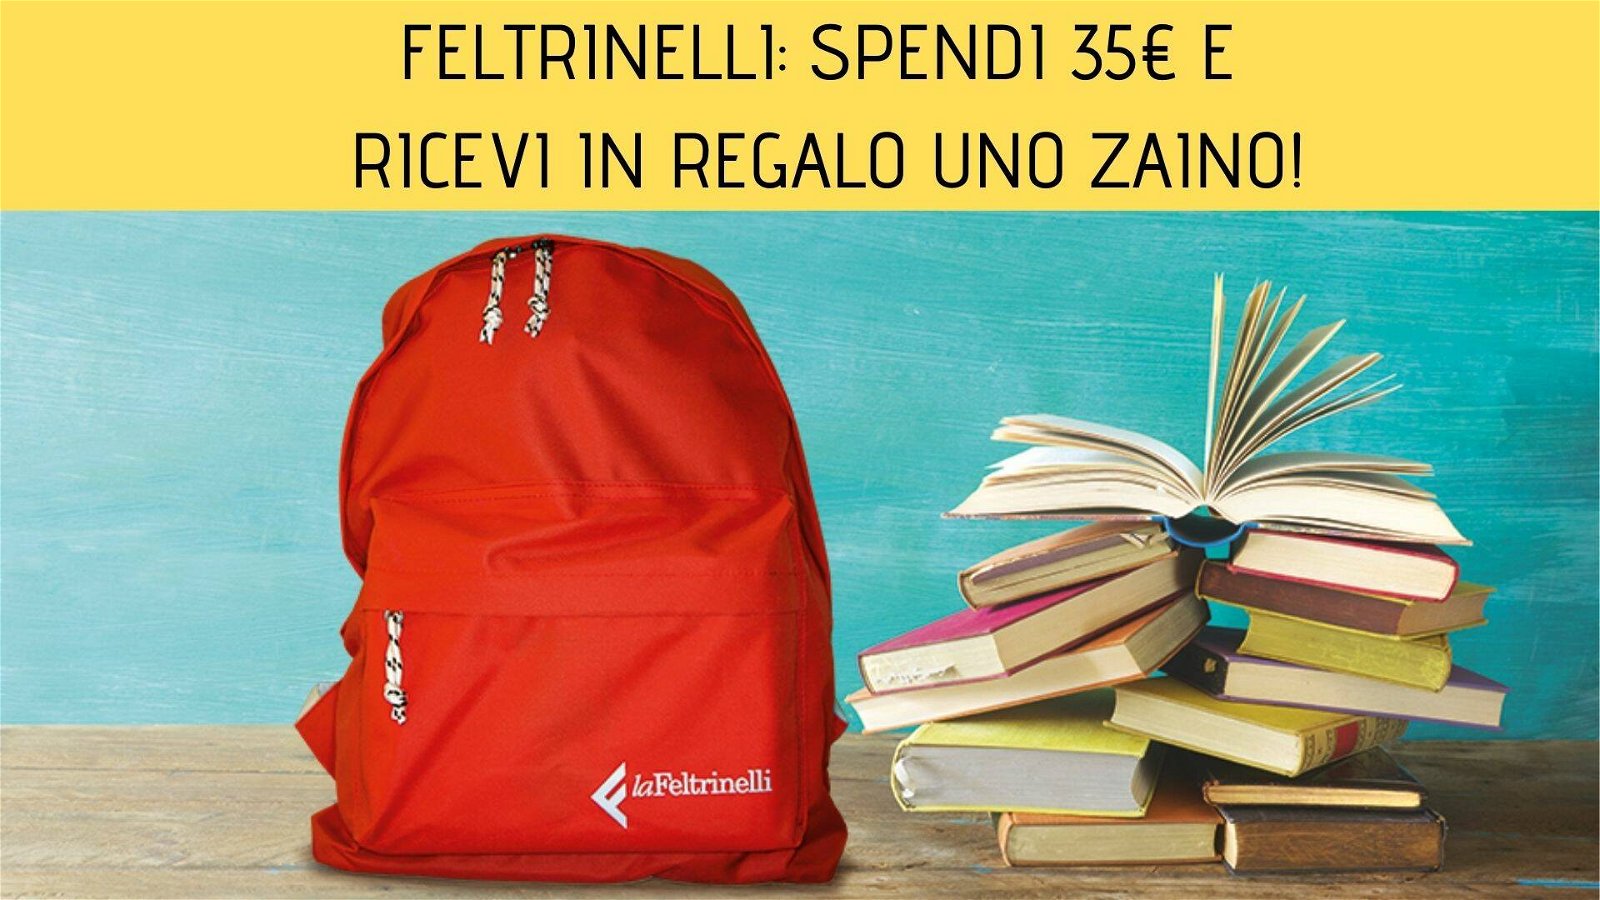 Immagine di Feltrinelli: spendi 35€ e ricevi in regalo uno zaino!